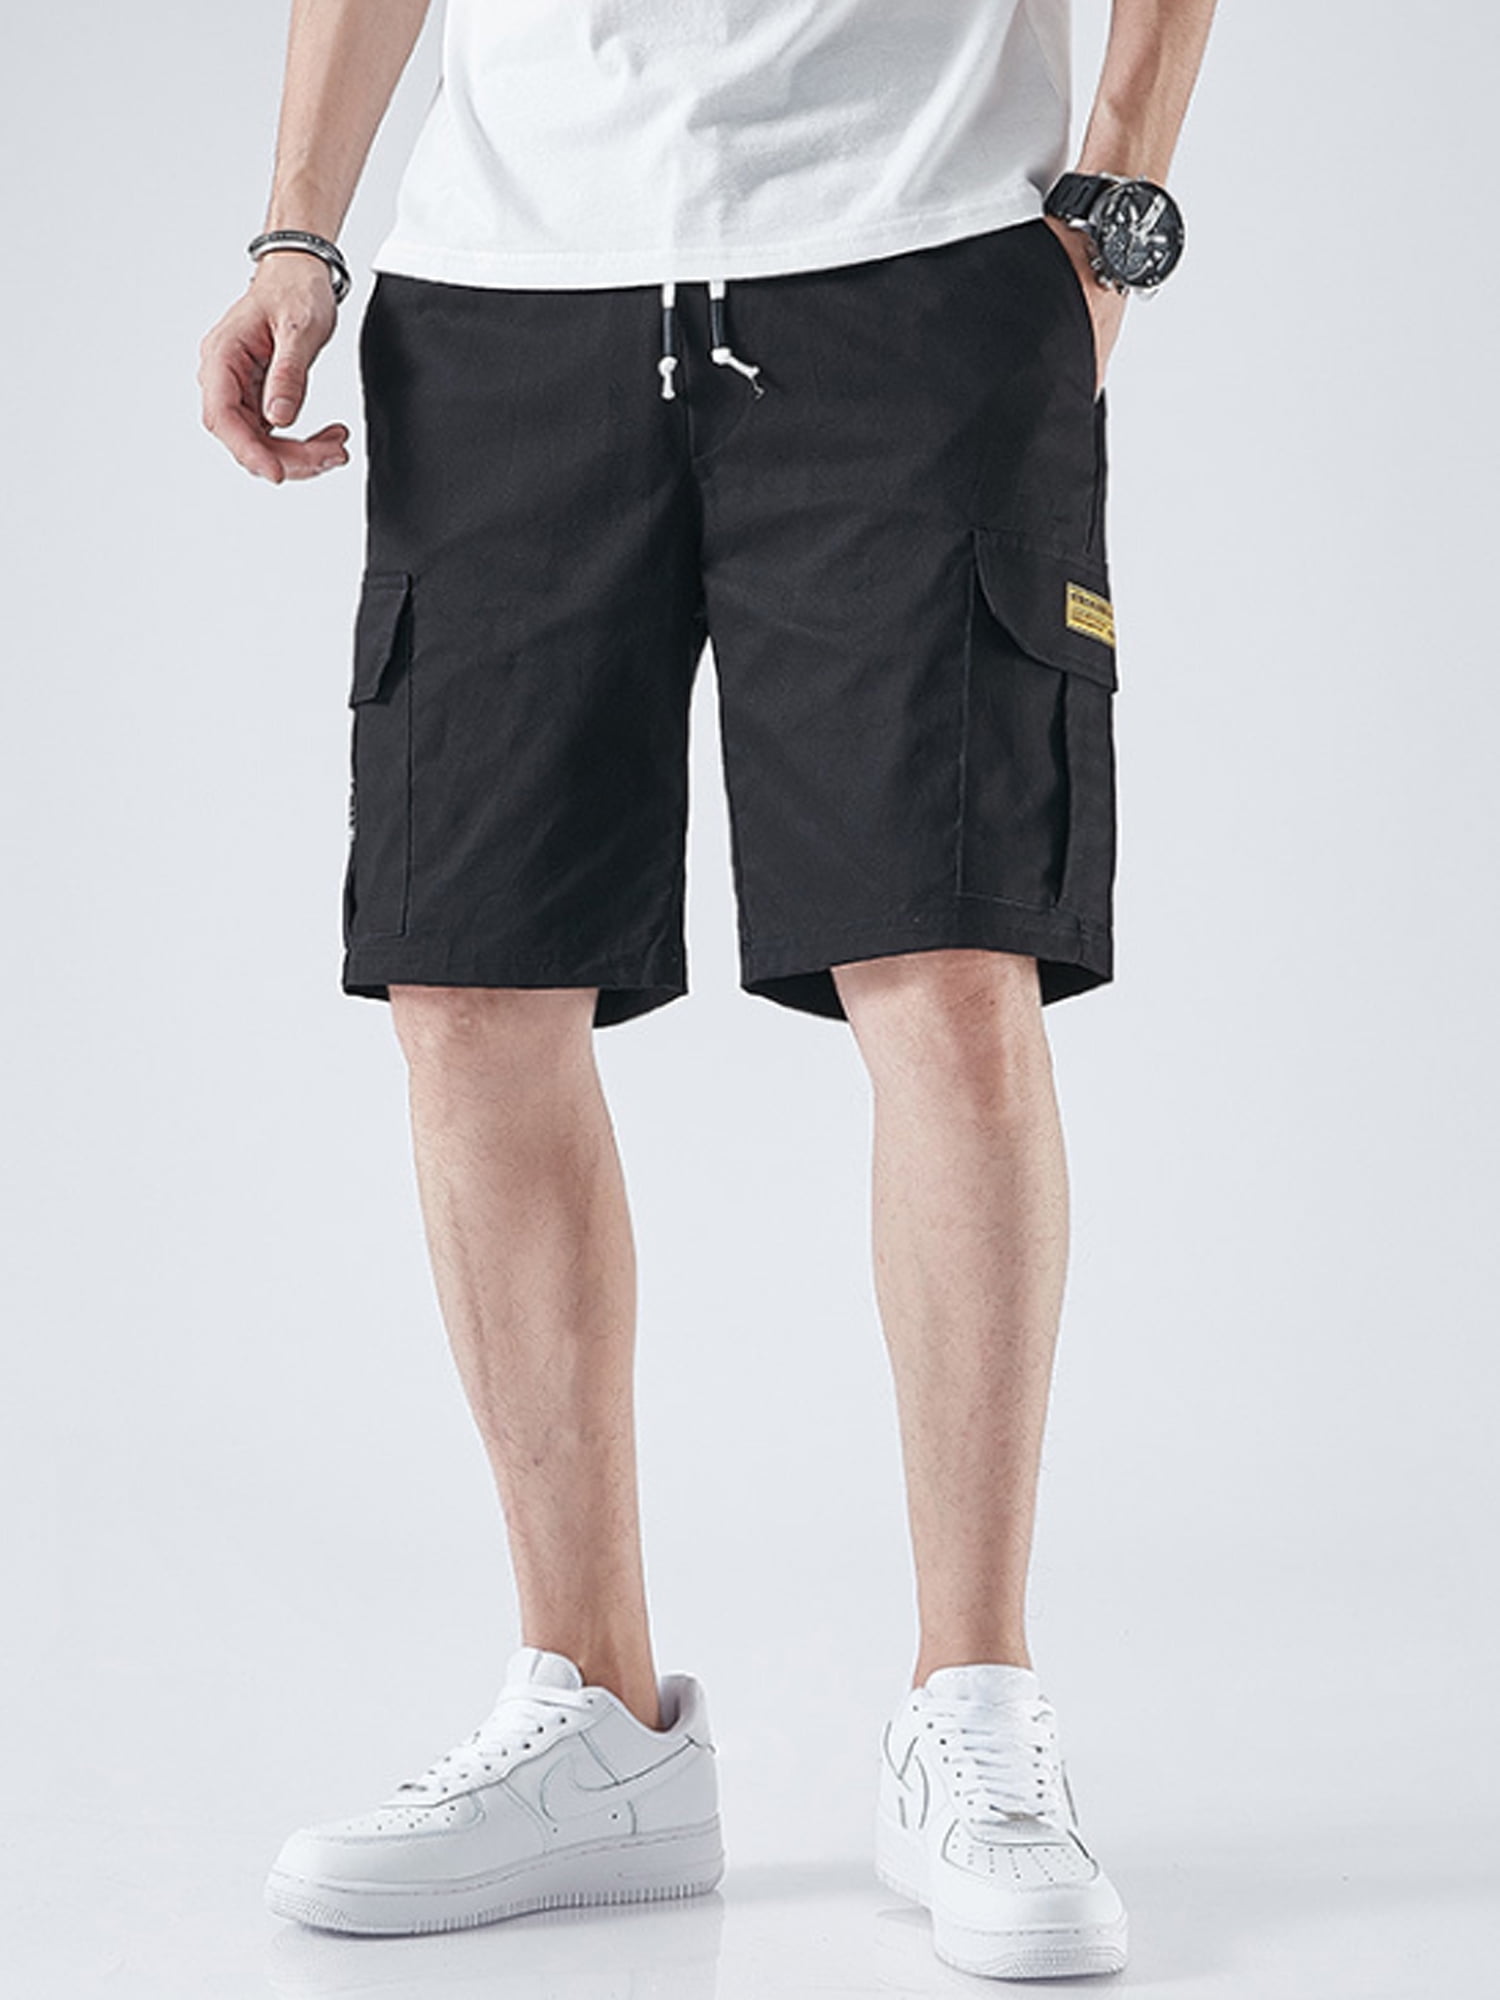 New Men's Loose Baggy Hip-hop Sports Shorts Pants Trousers 3XL~6XL Plus Size 